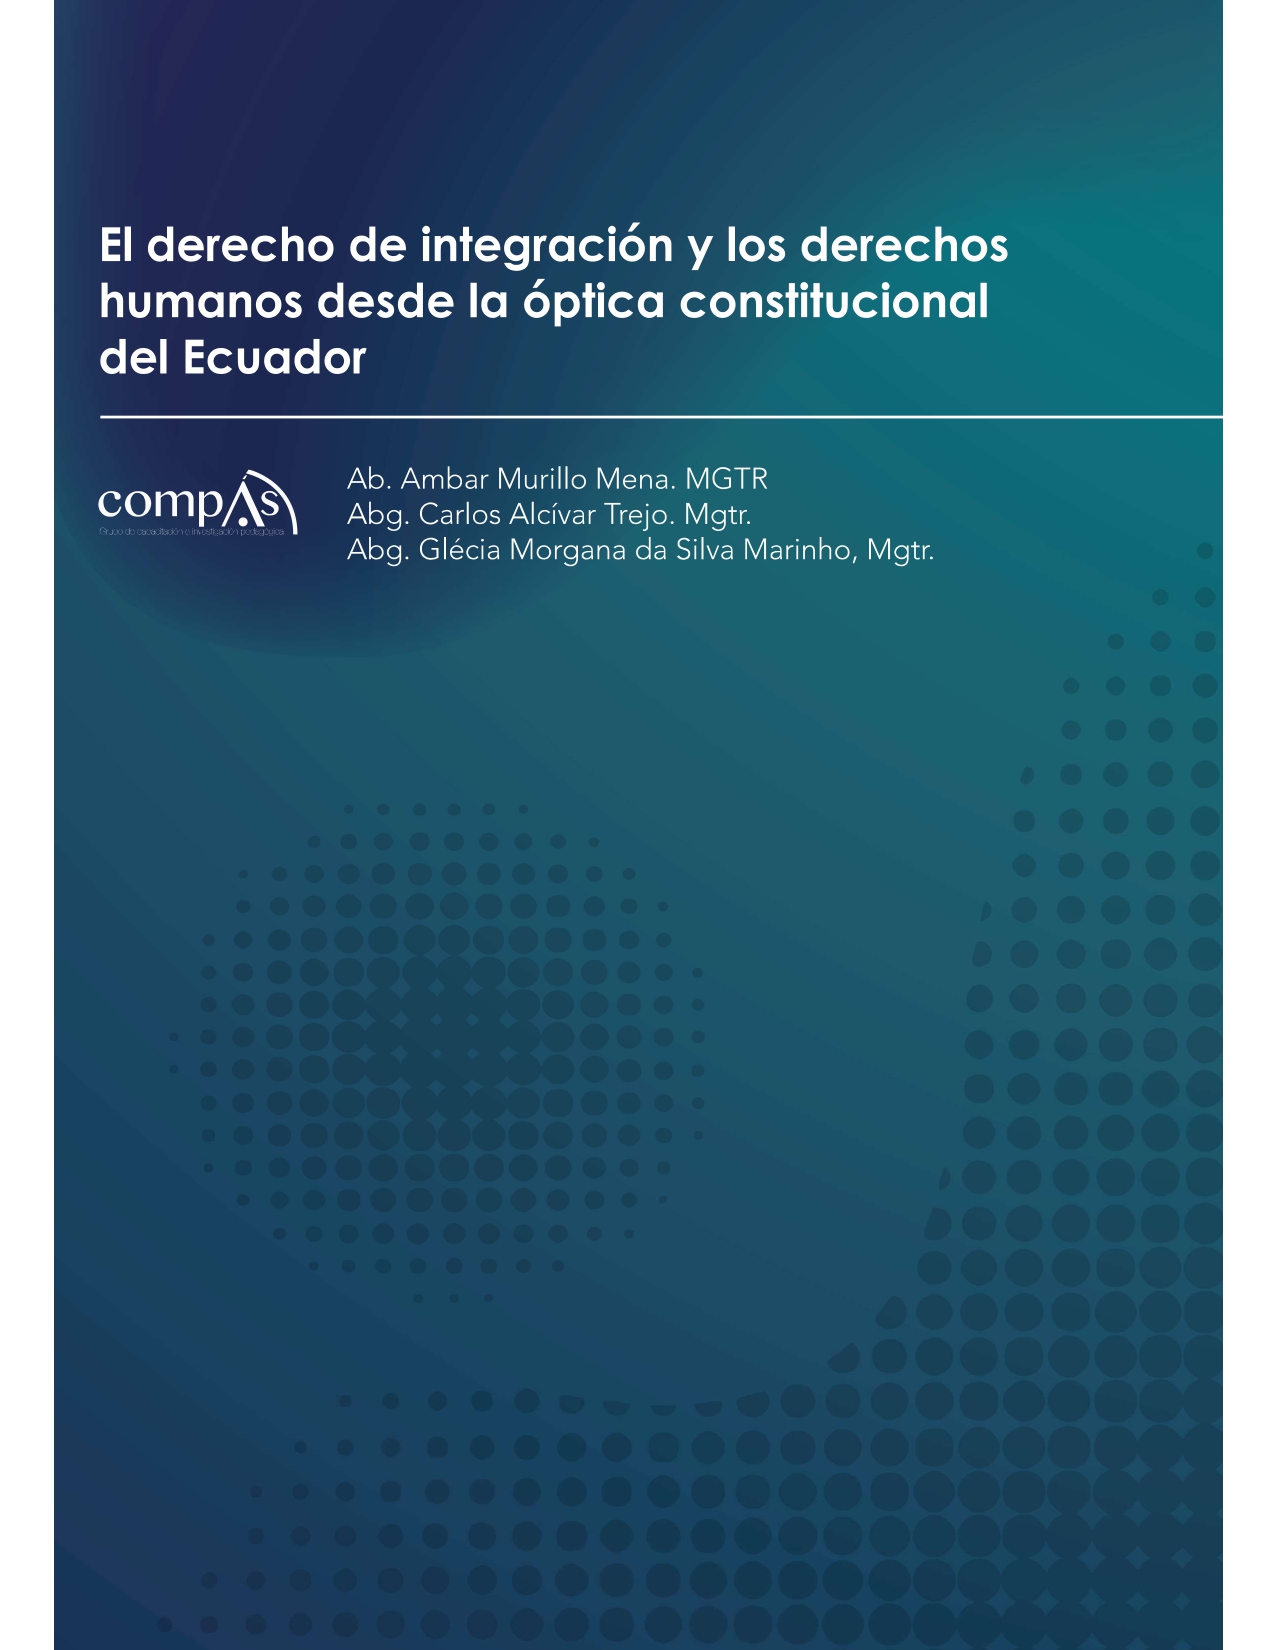 Imagen de portada del libro El derecho de integración y los derechos humanos desde la óptica constitucional del Ecuador